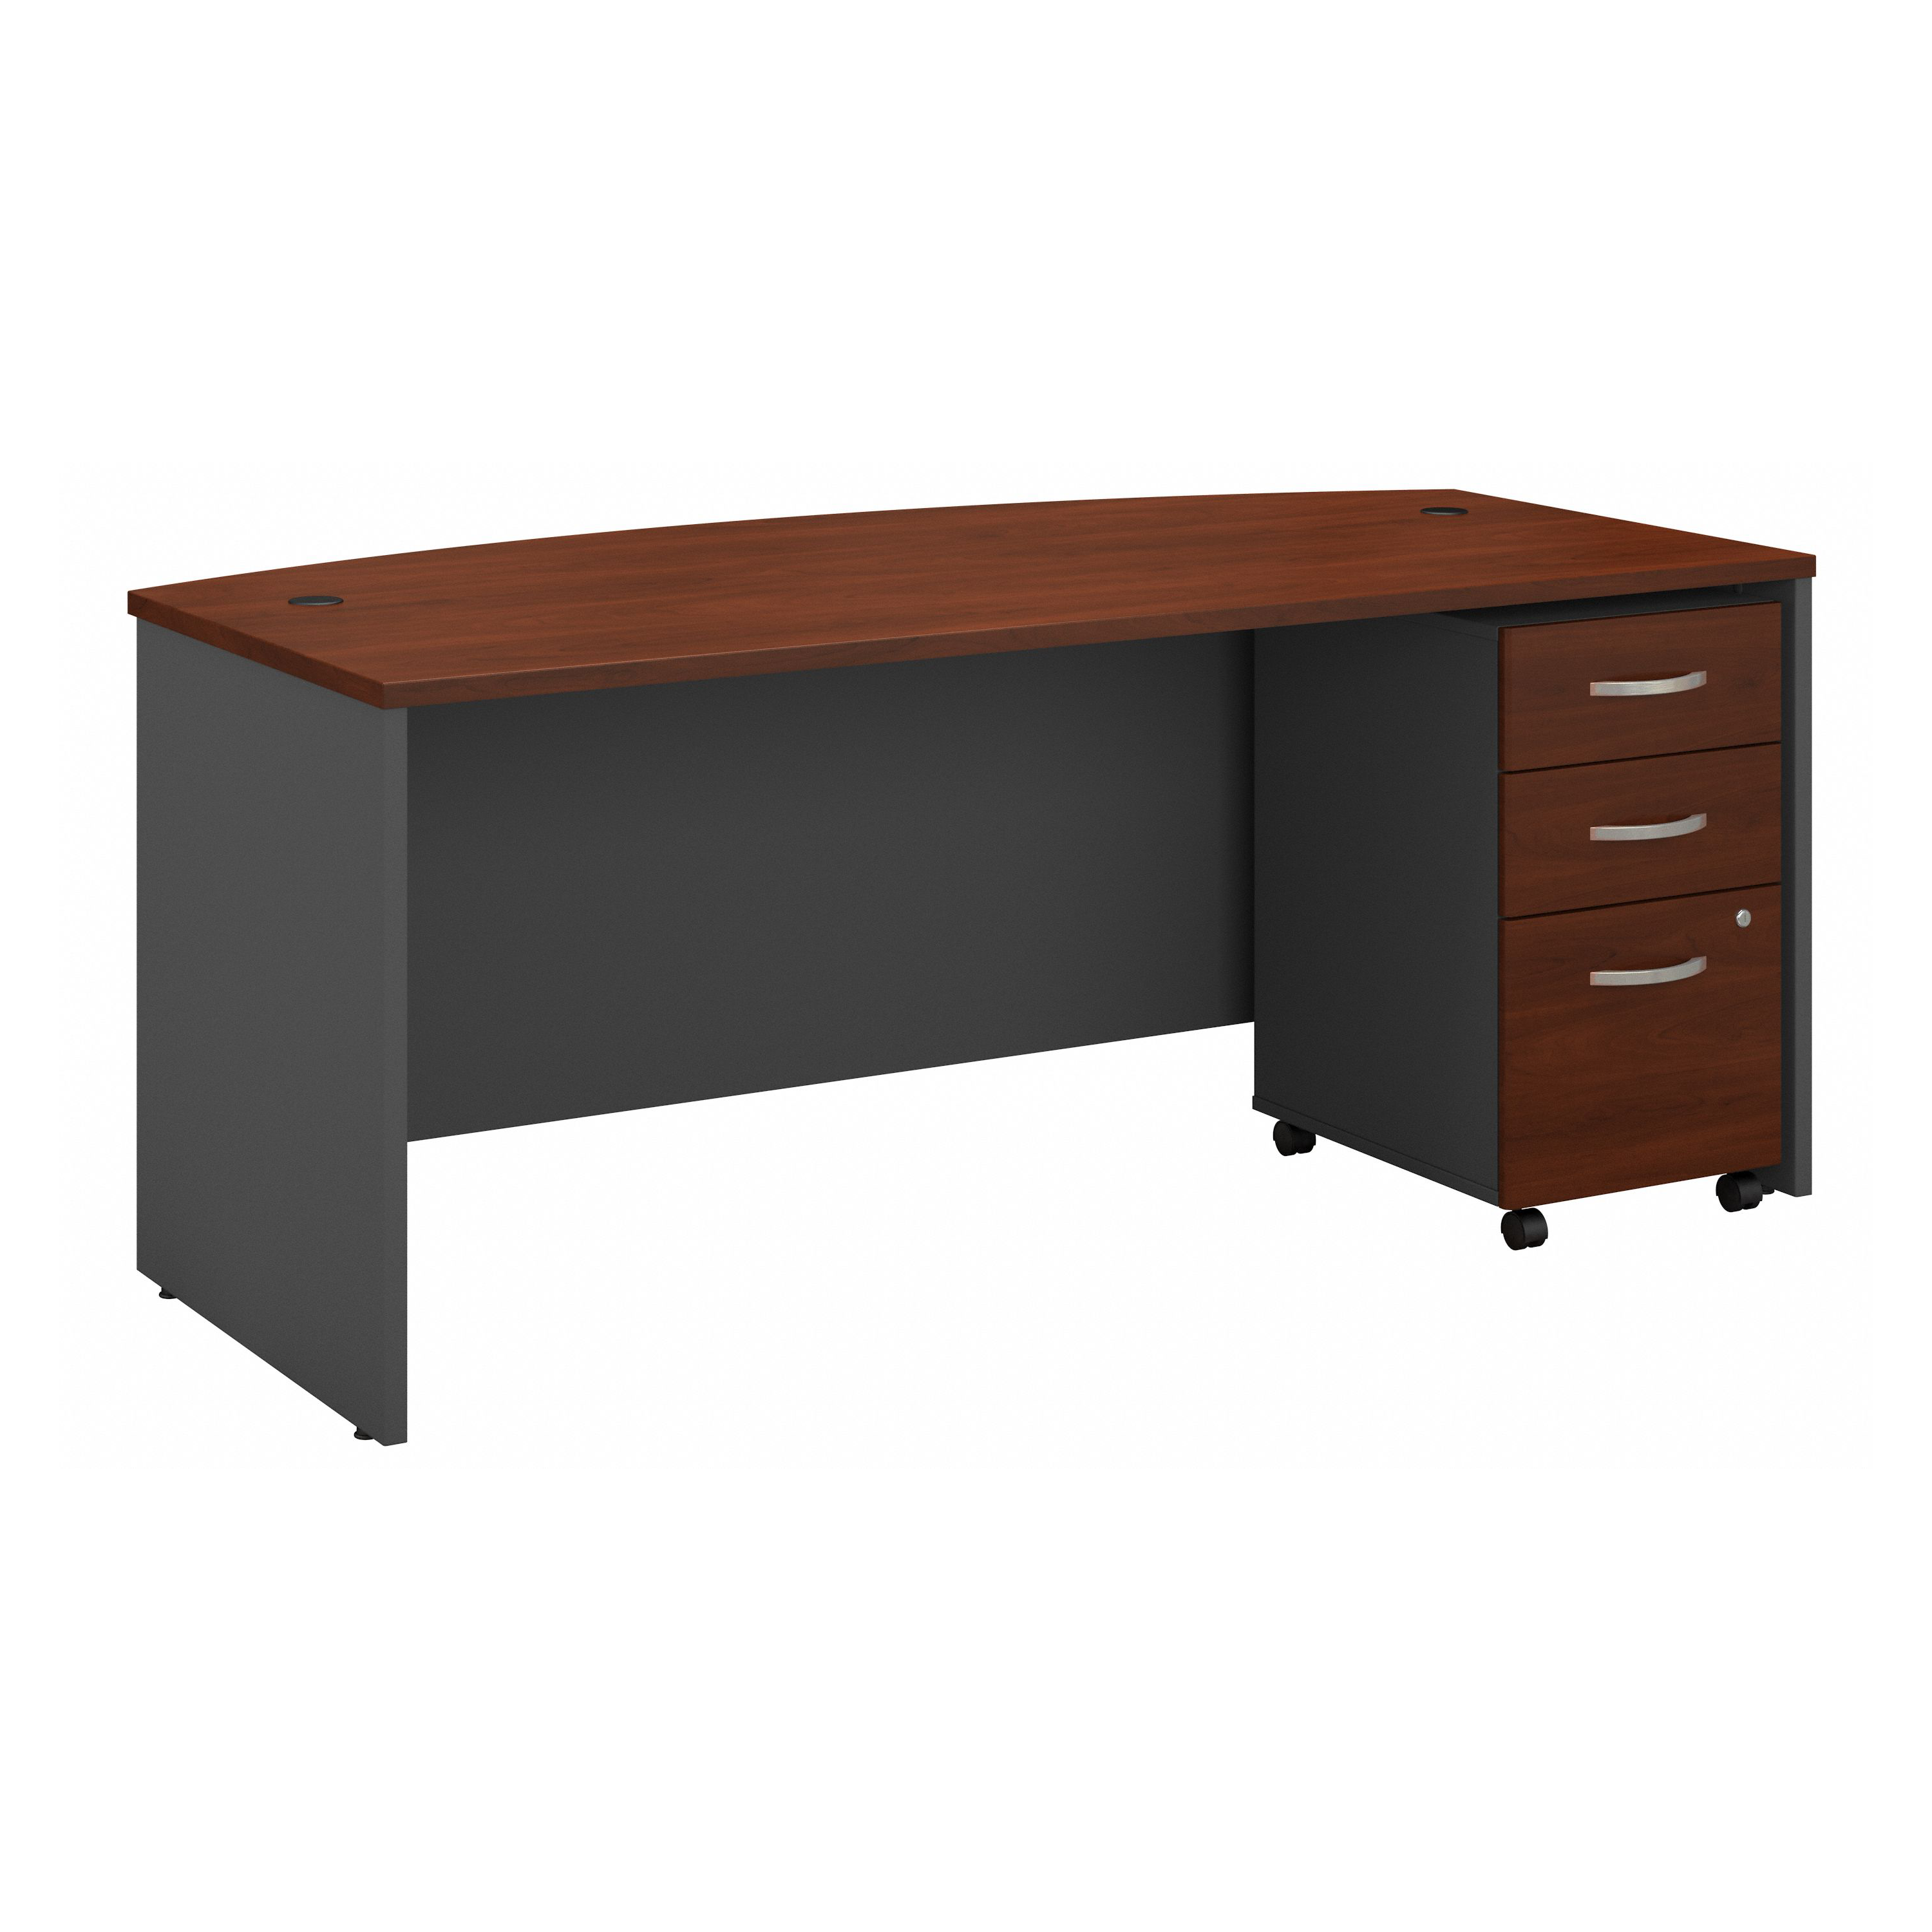 Shop Bush Business Furniture Series C 72W x 36D Bow Front Desk with Mobile File Cabinet 02 SRC079HCSU #color_hansen cherry/graphite gray